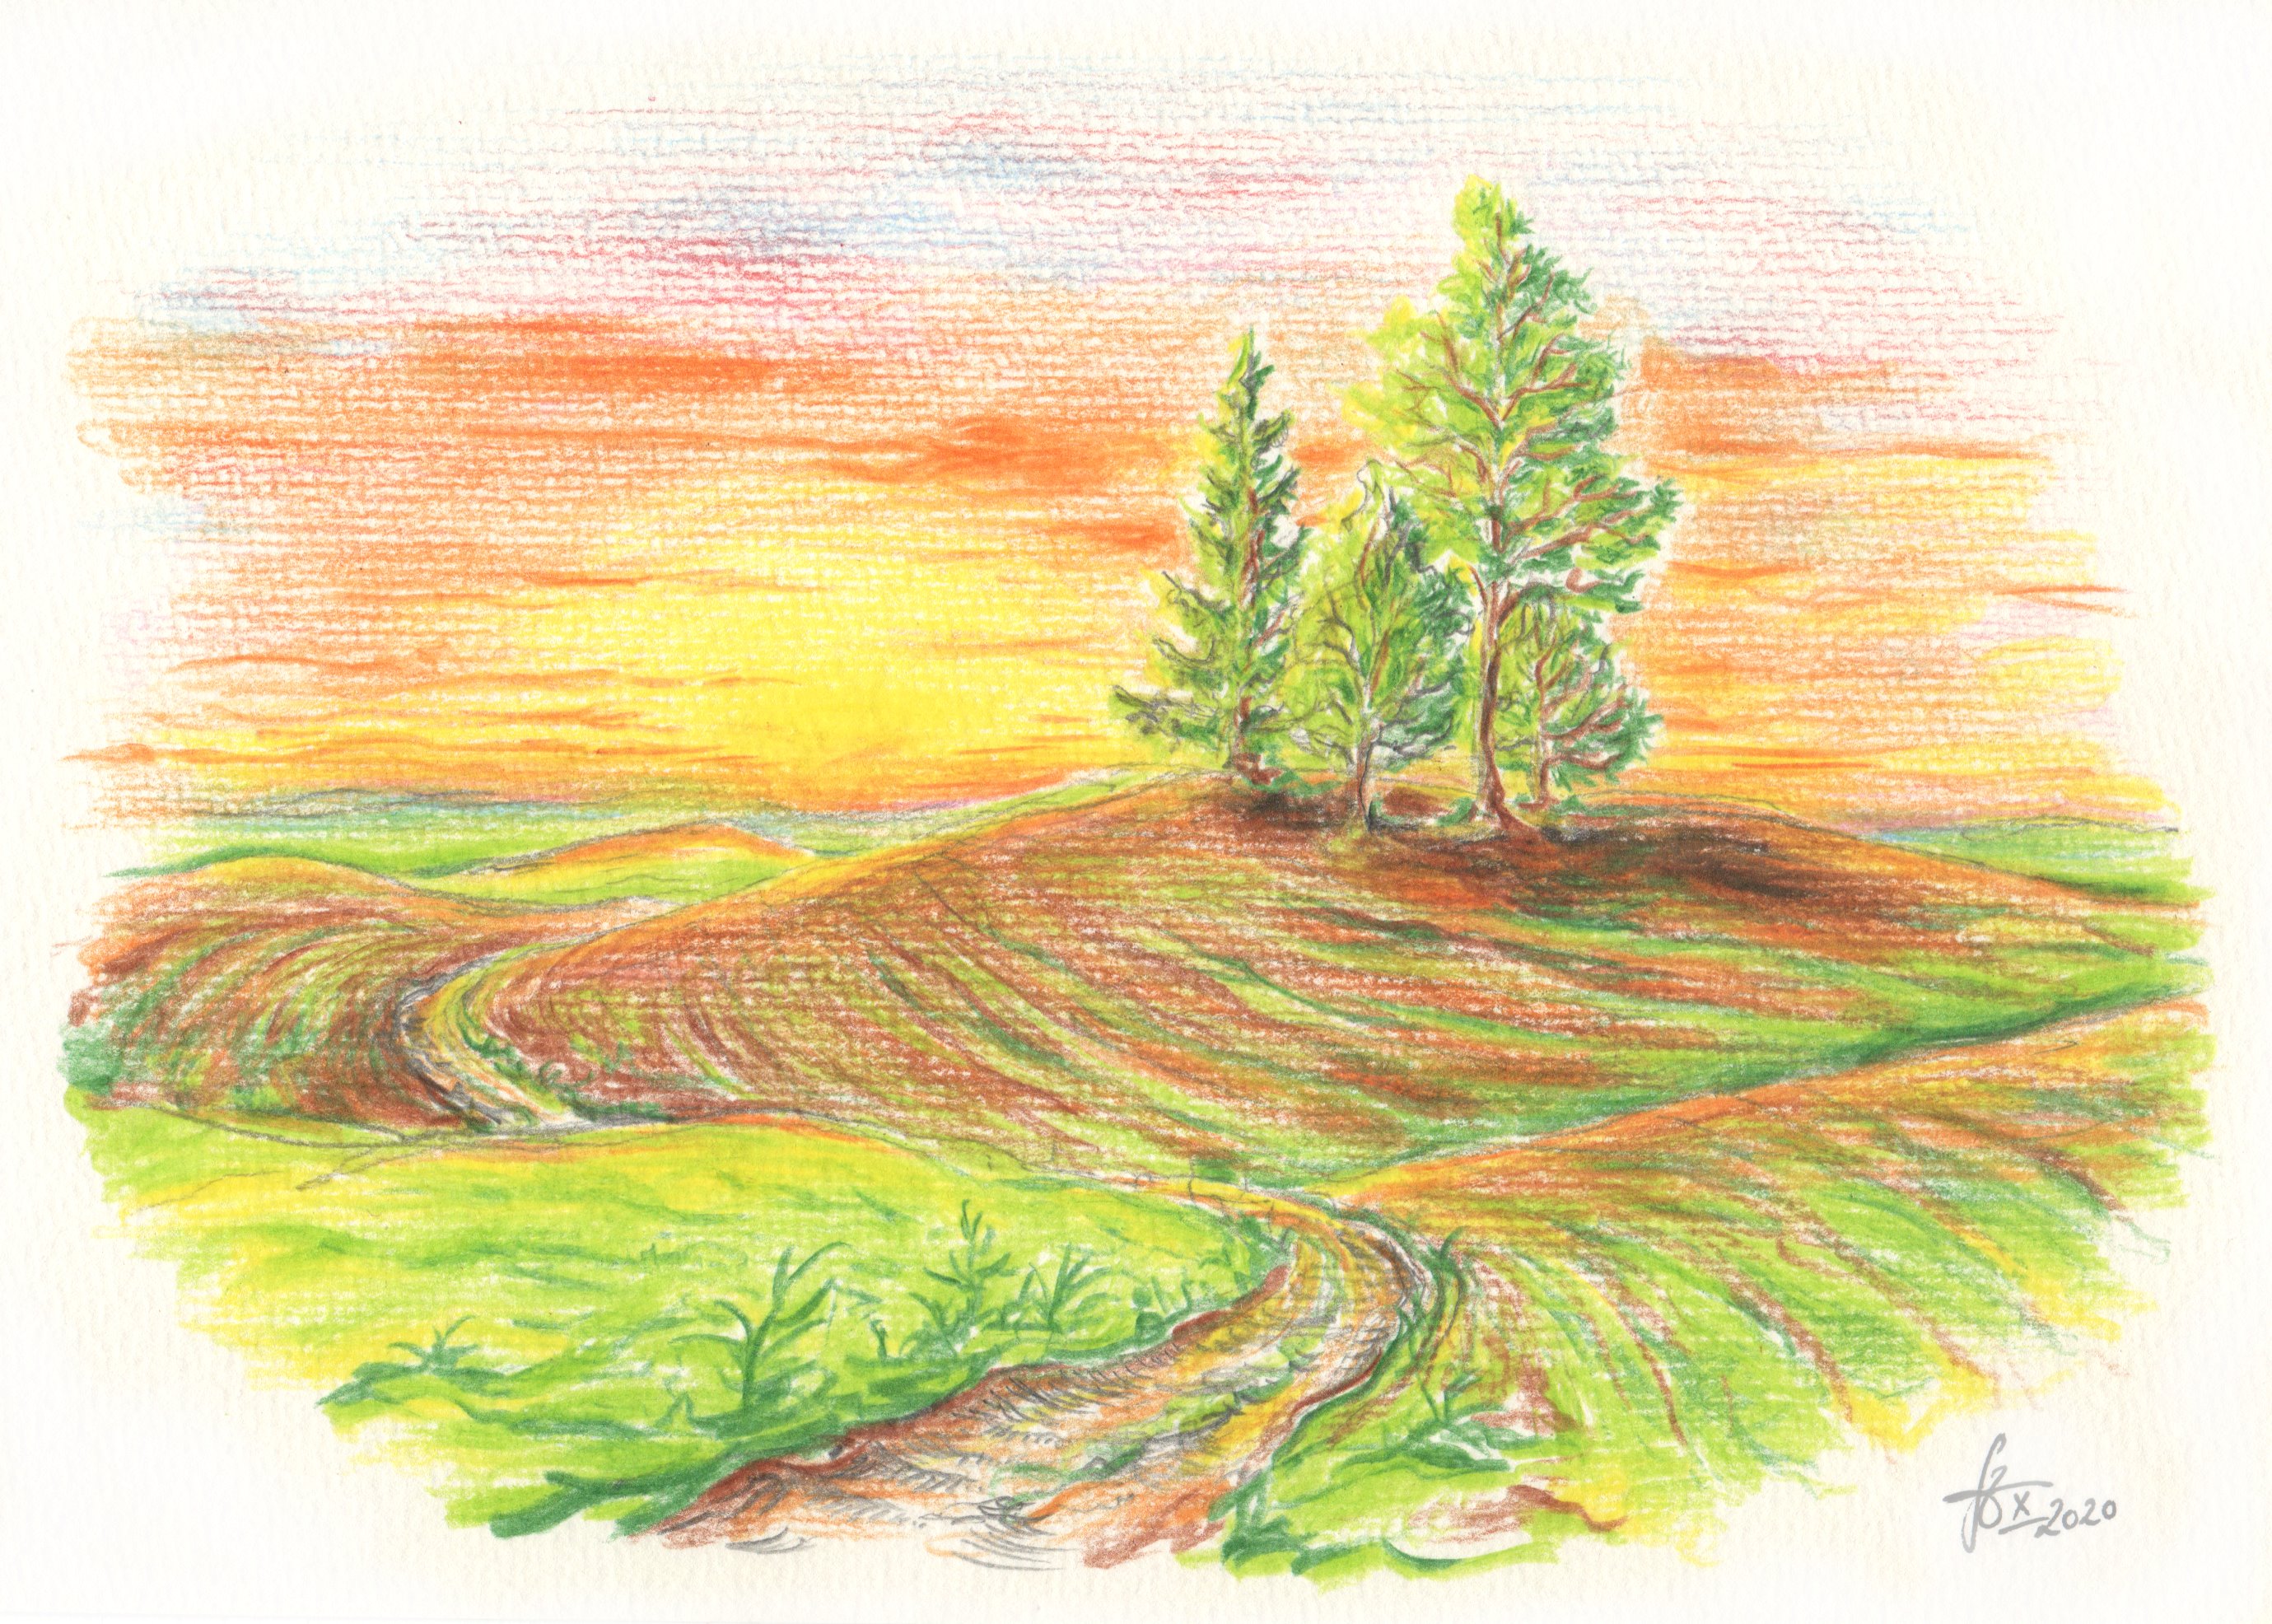 Zeichnung inspiriert durch das Gedicht von Emily Dickinson: "Four Trees - upon a solitary Acre - (Vier Bäume - auf einem einsamen Feld -)", ca. 1863